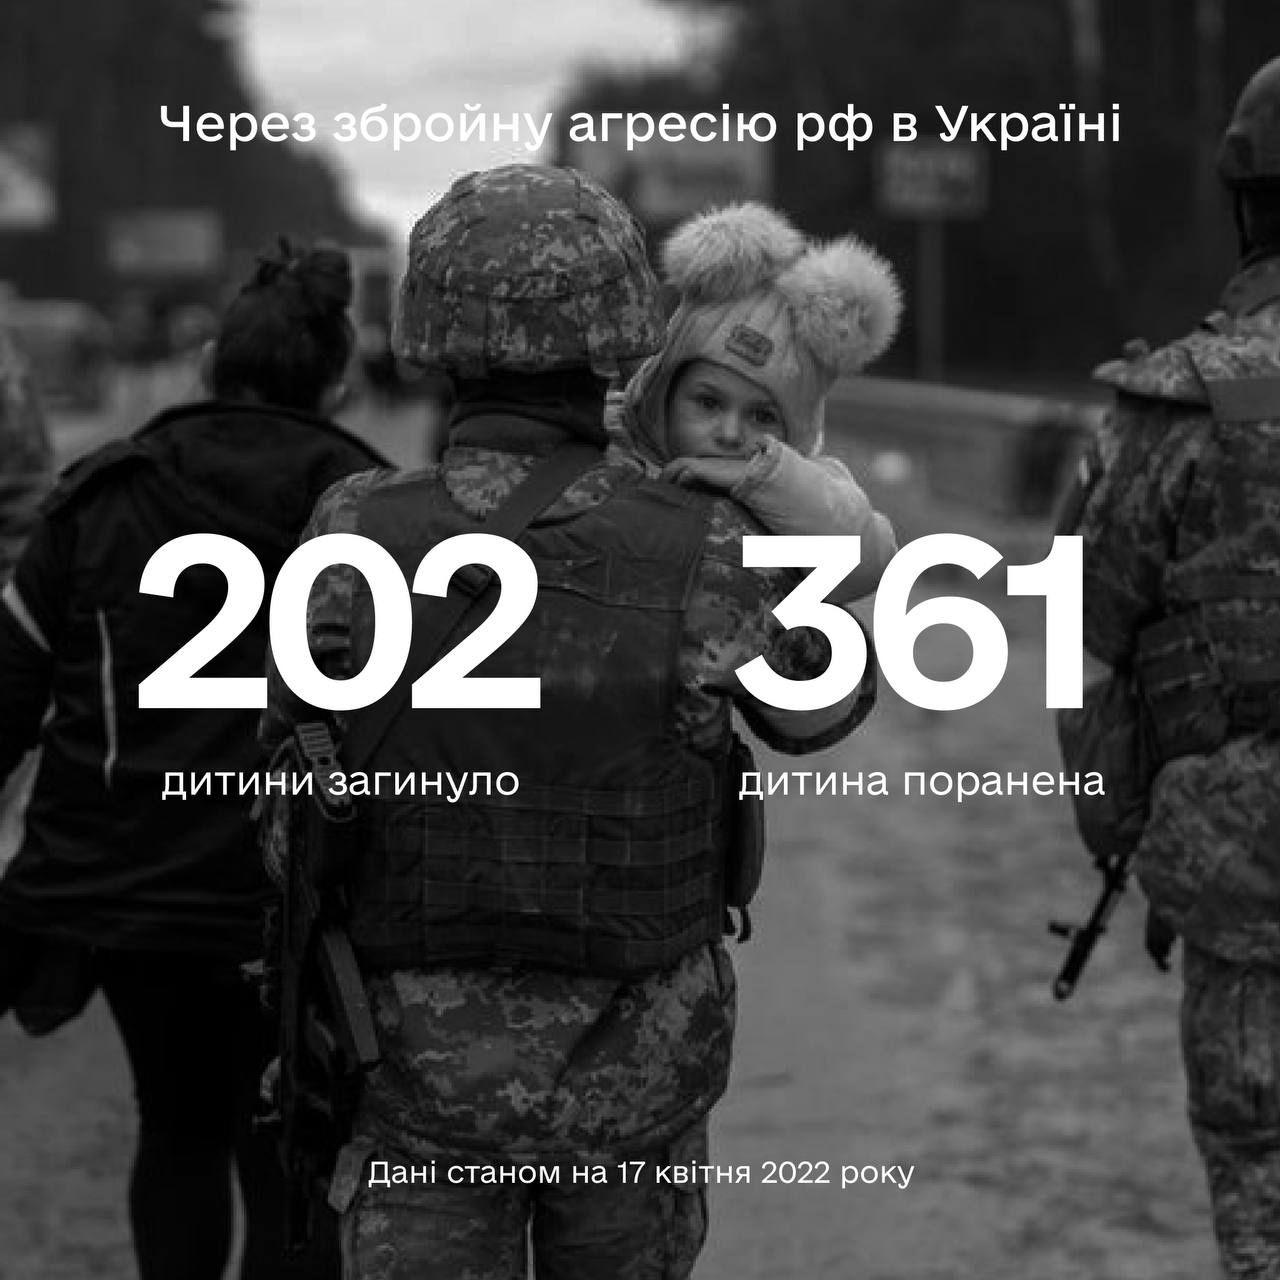 Уже встановлено 202 жертв серед дітей від рук російських окупантів 